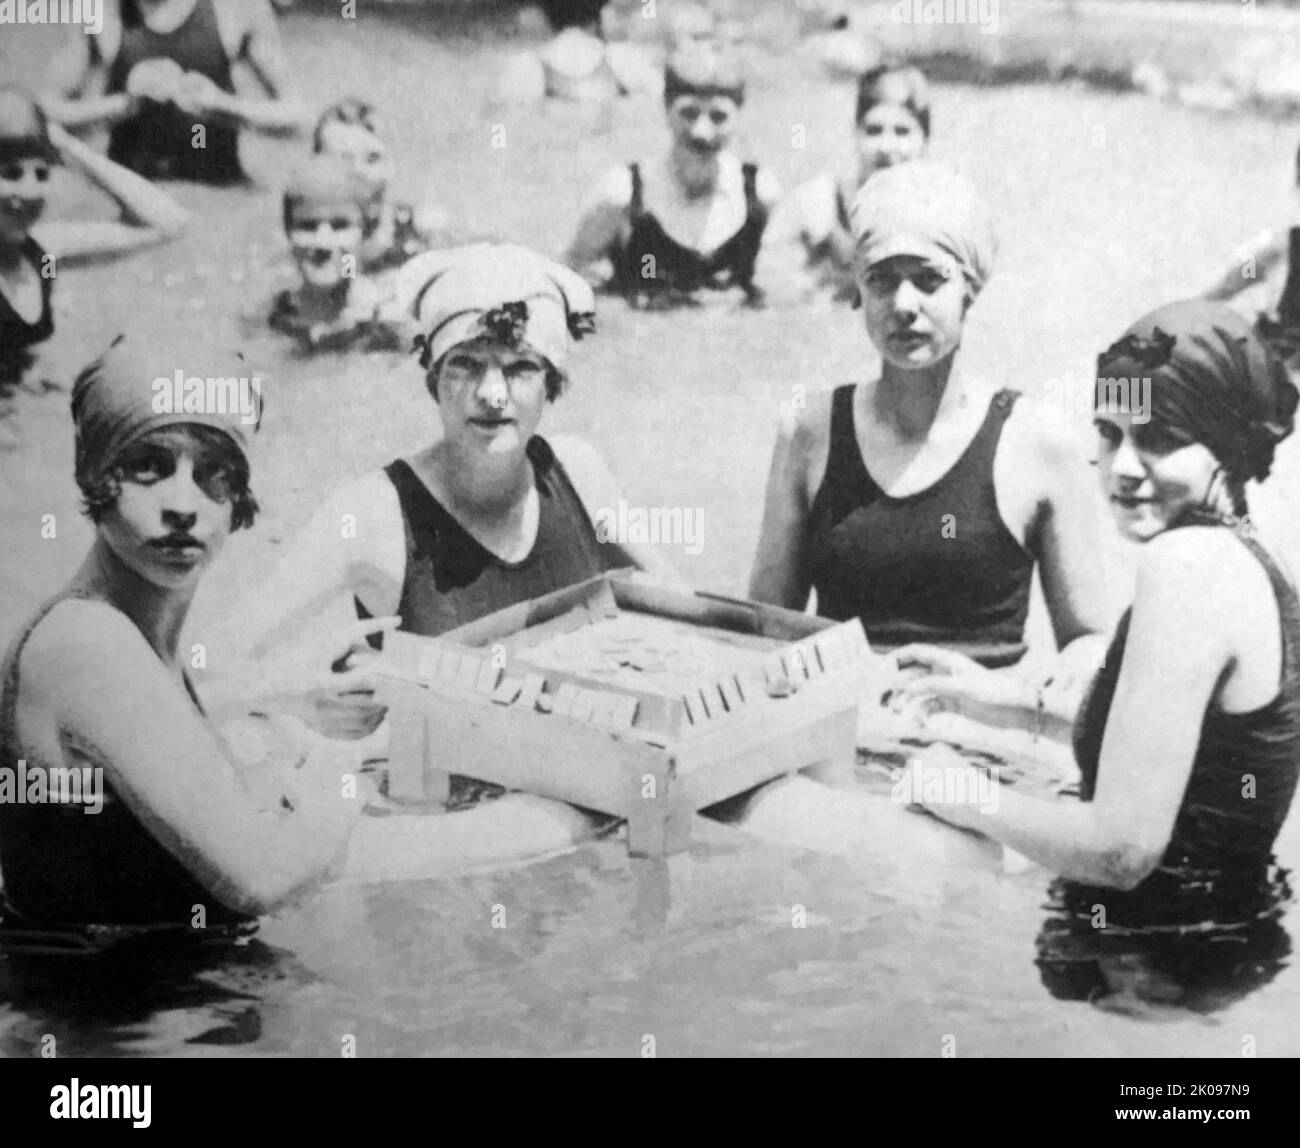 Frauen spielen das importierte chinesische Spiel Mah Jongg im Wardman Park Pool. Stockfoto